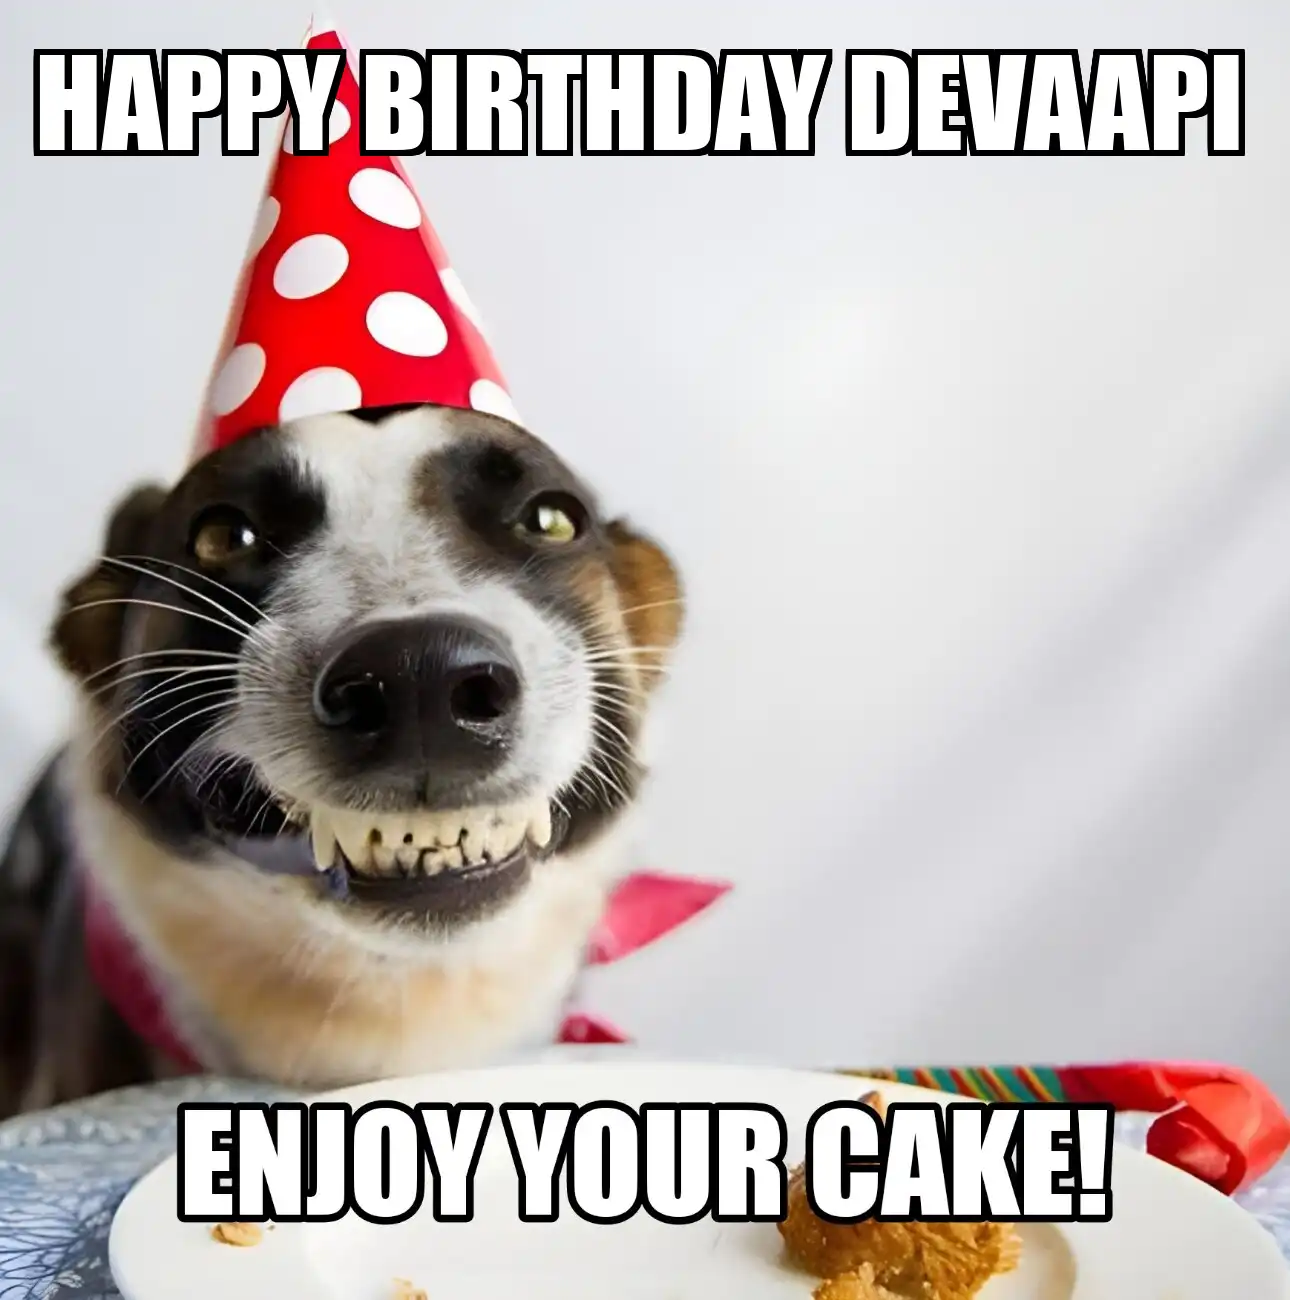 Happy Birthday Devaapi Enjoy Your Cake Dog Meme